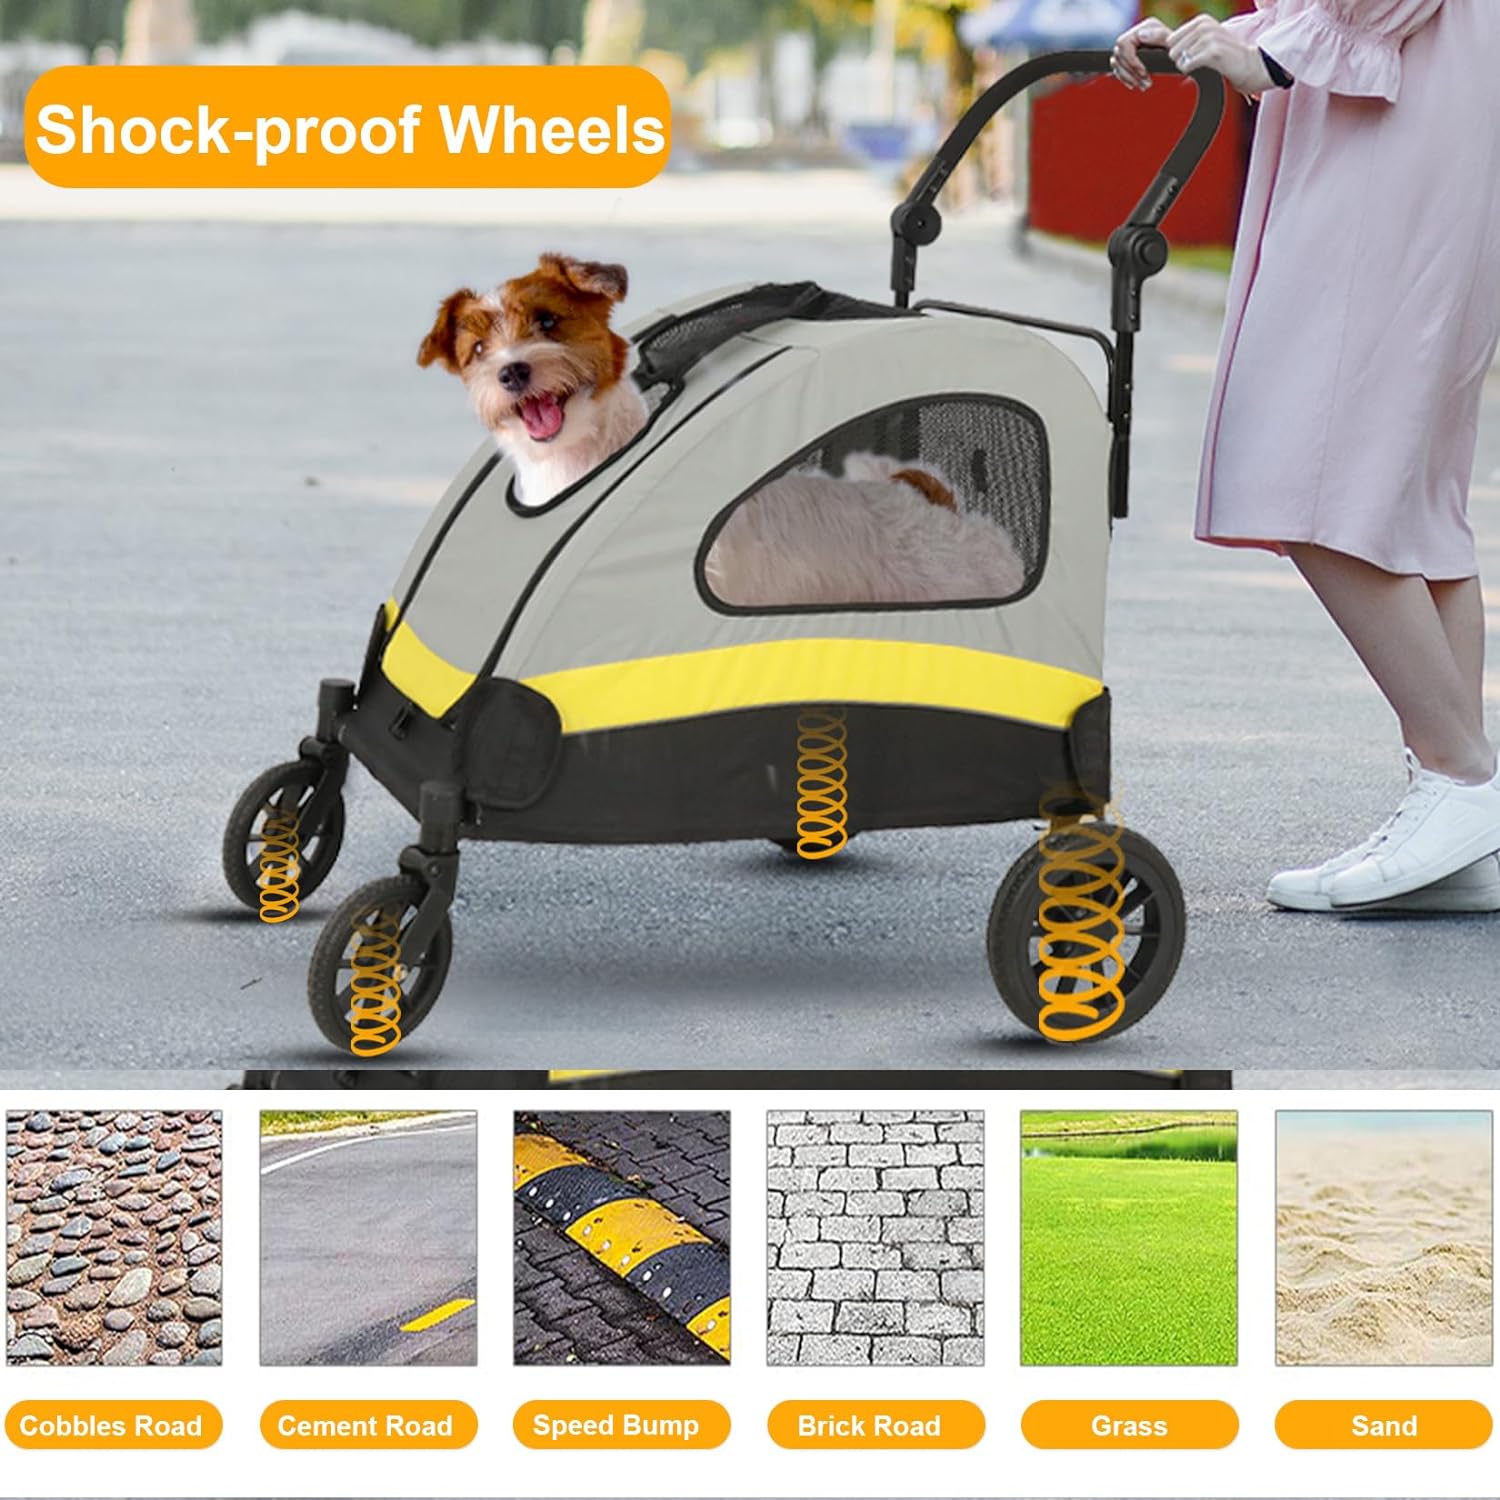 کالسکه سگ ، صندلی چرخدار خانگی با 4 چرخ قوی و سنگین با ترمز در عقب ، جلو برند : Wisfor  کد : KL 950